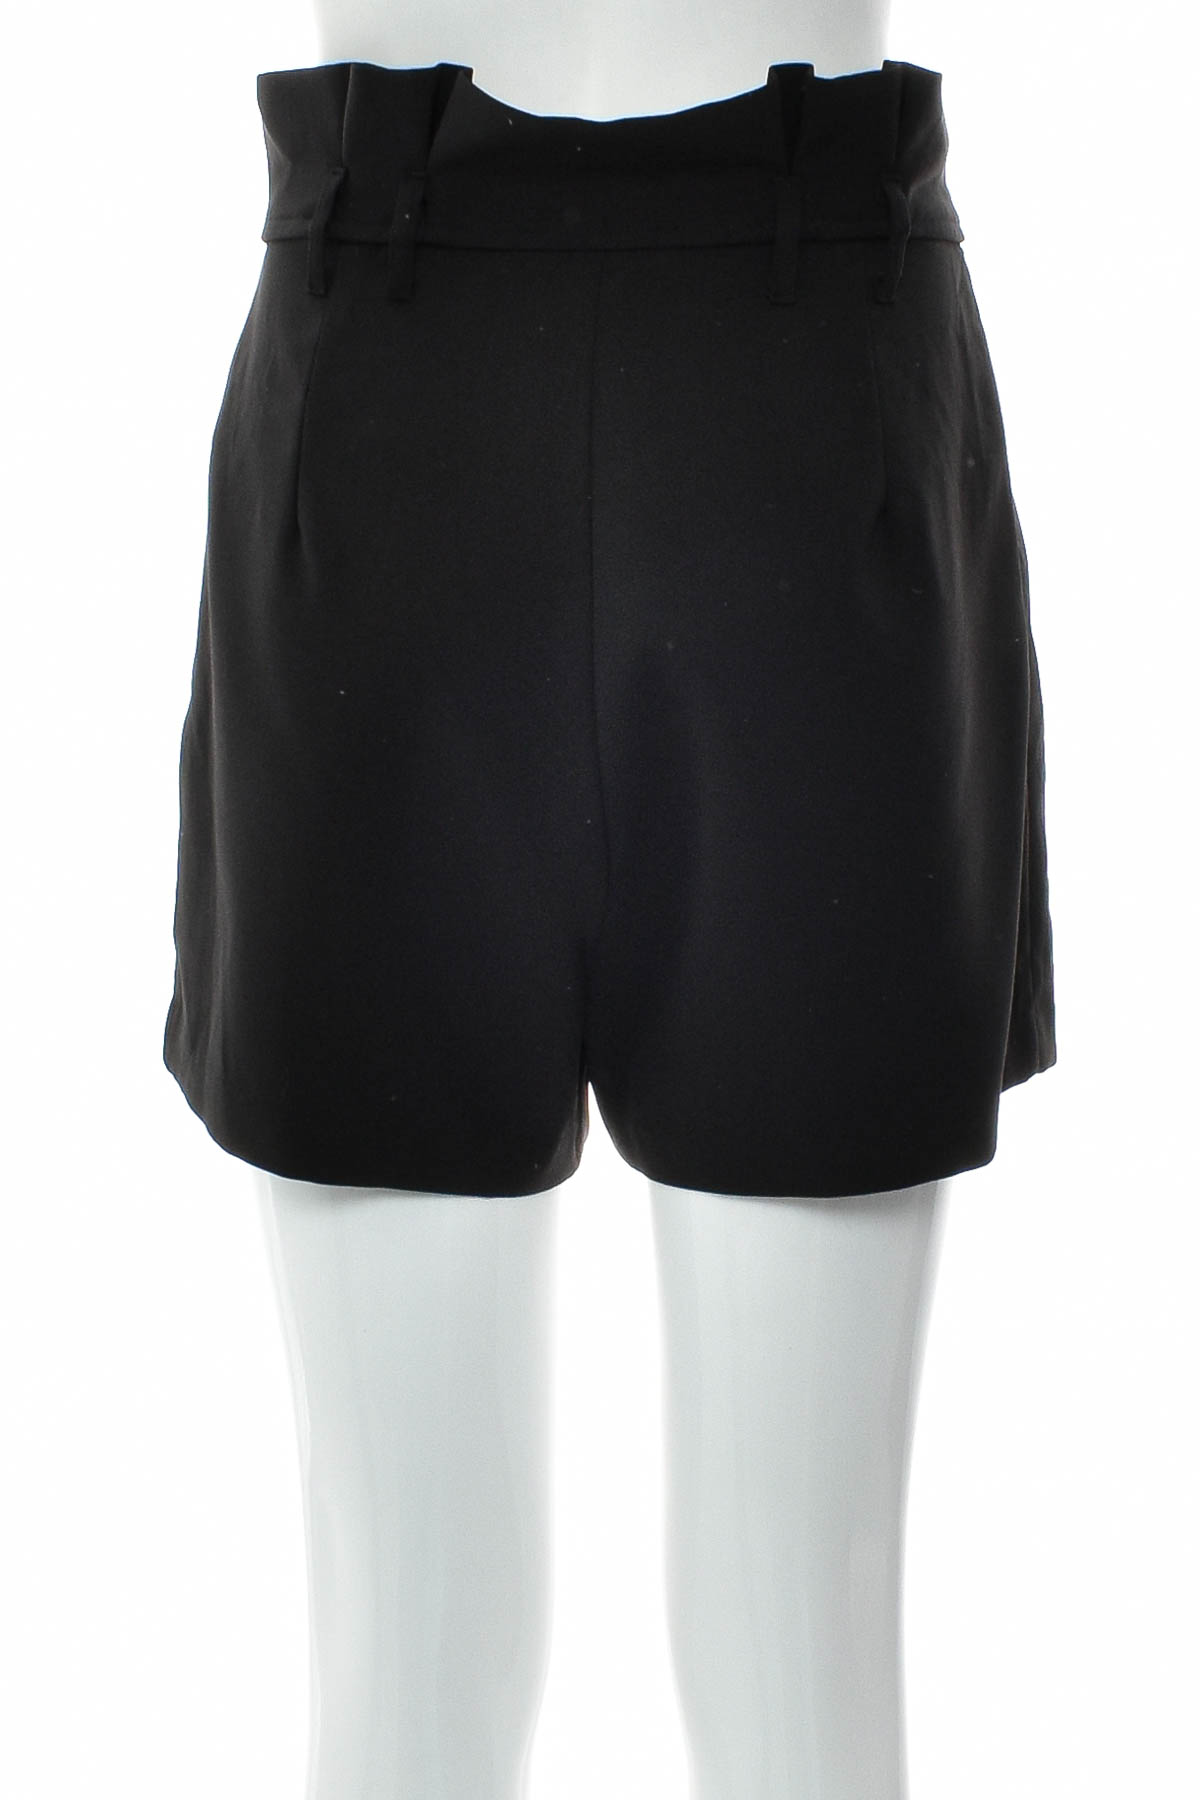 Female shorts - BIK BOK - 1